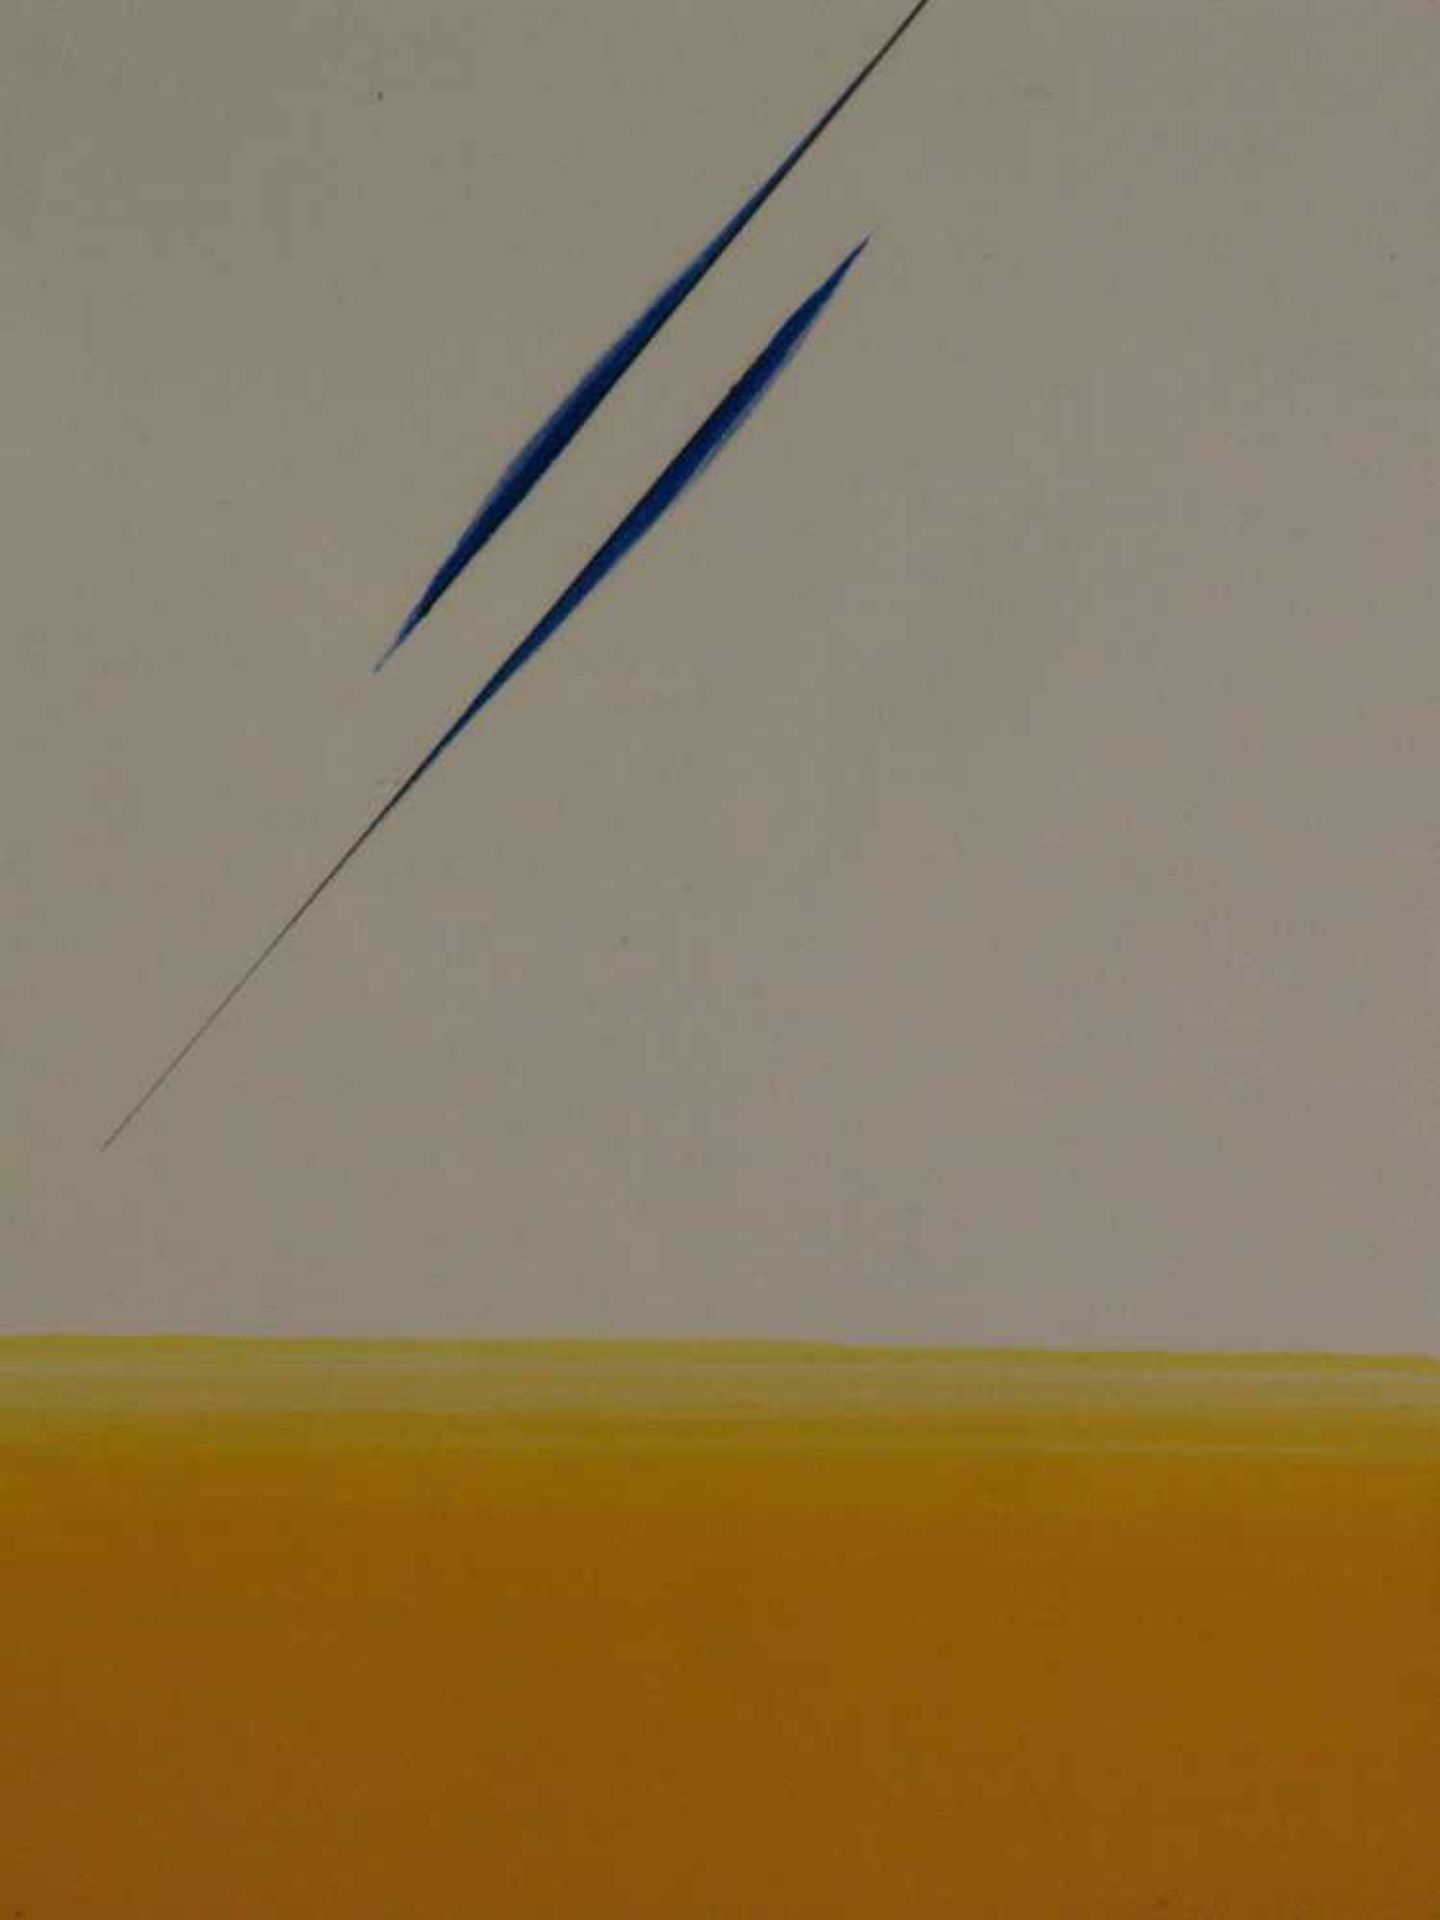 Loew, Peter (1931-2012) - Abstraktion in Orange und Blau, Mischtechnik auf Papier, unten rechts - Image 2 of 3